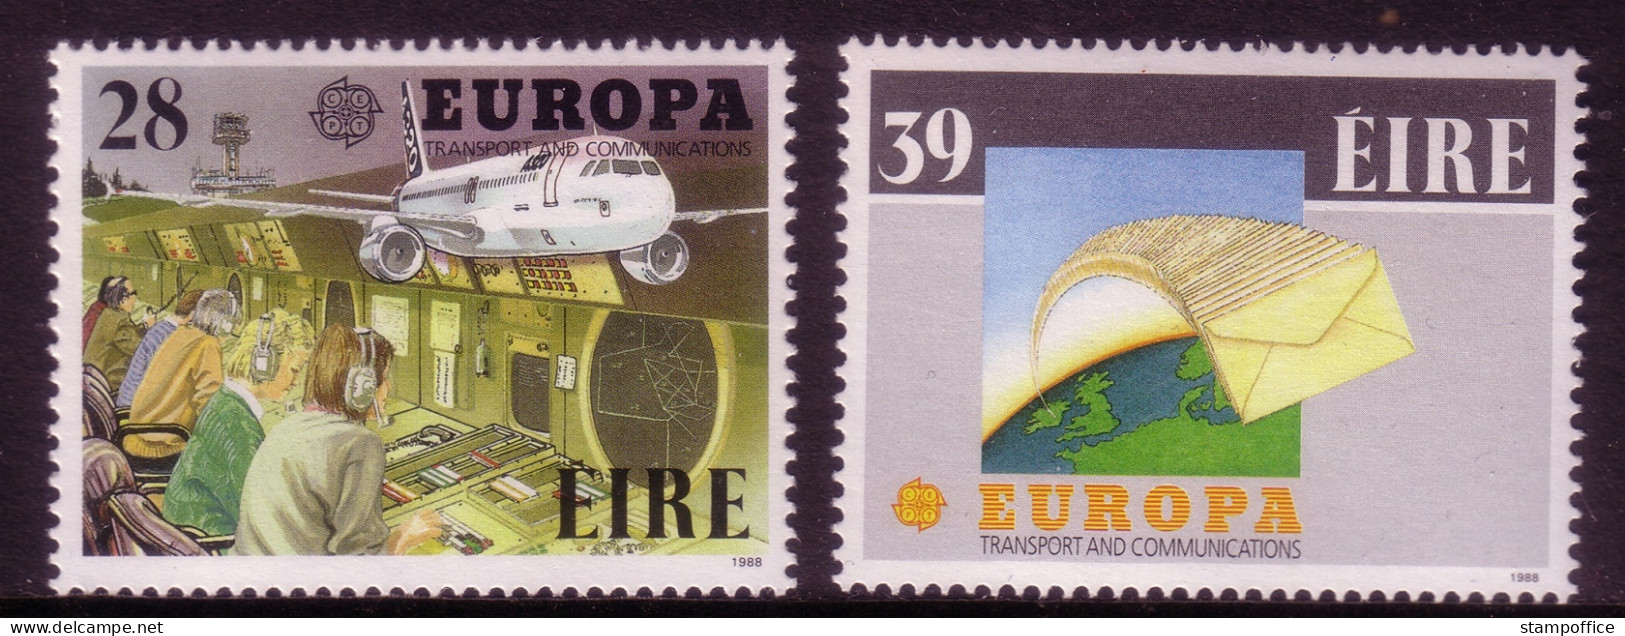 IRLAND MI-NR. 650-651 POSTFRISCH EUROPA 1988 TRANSPORTMITTEL FLUGZEUG - 1988